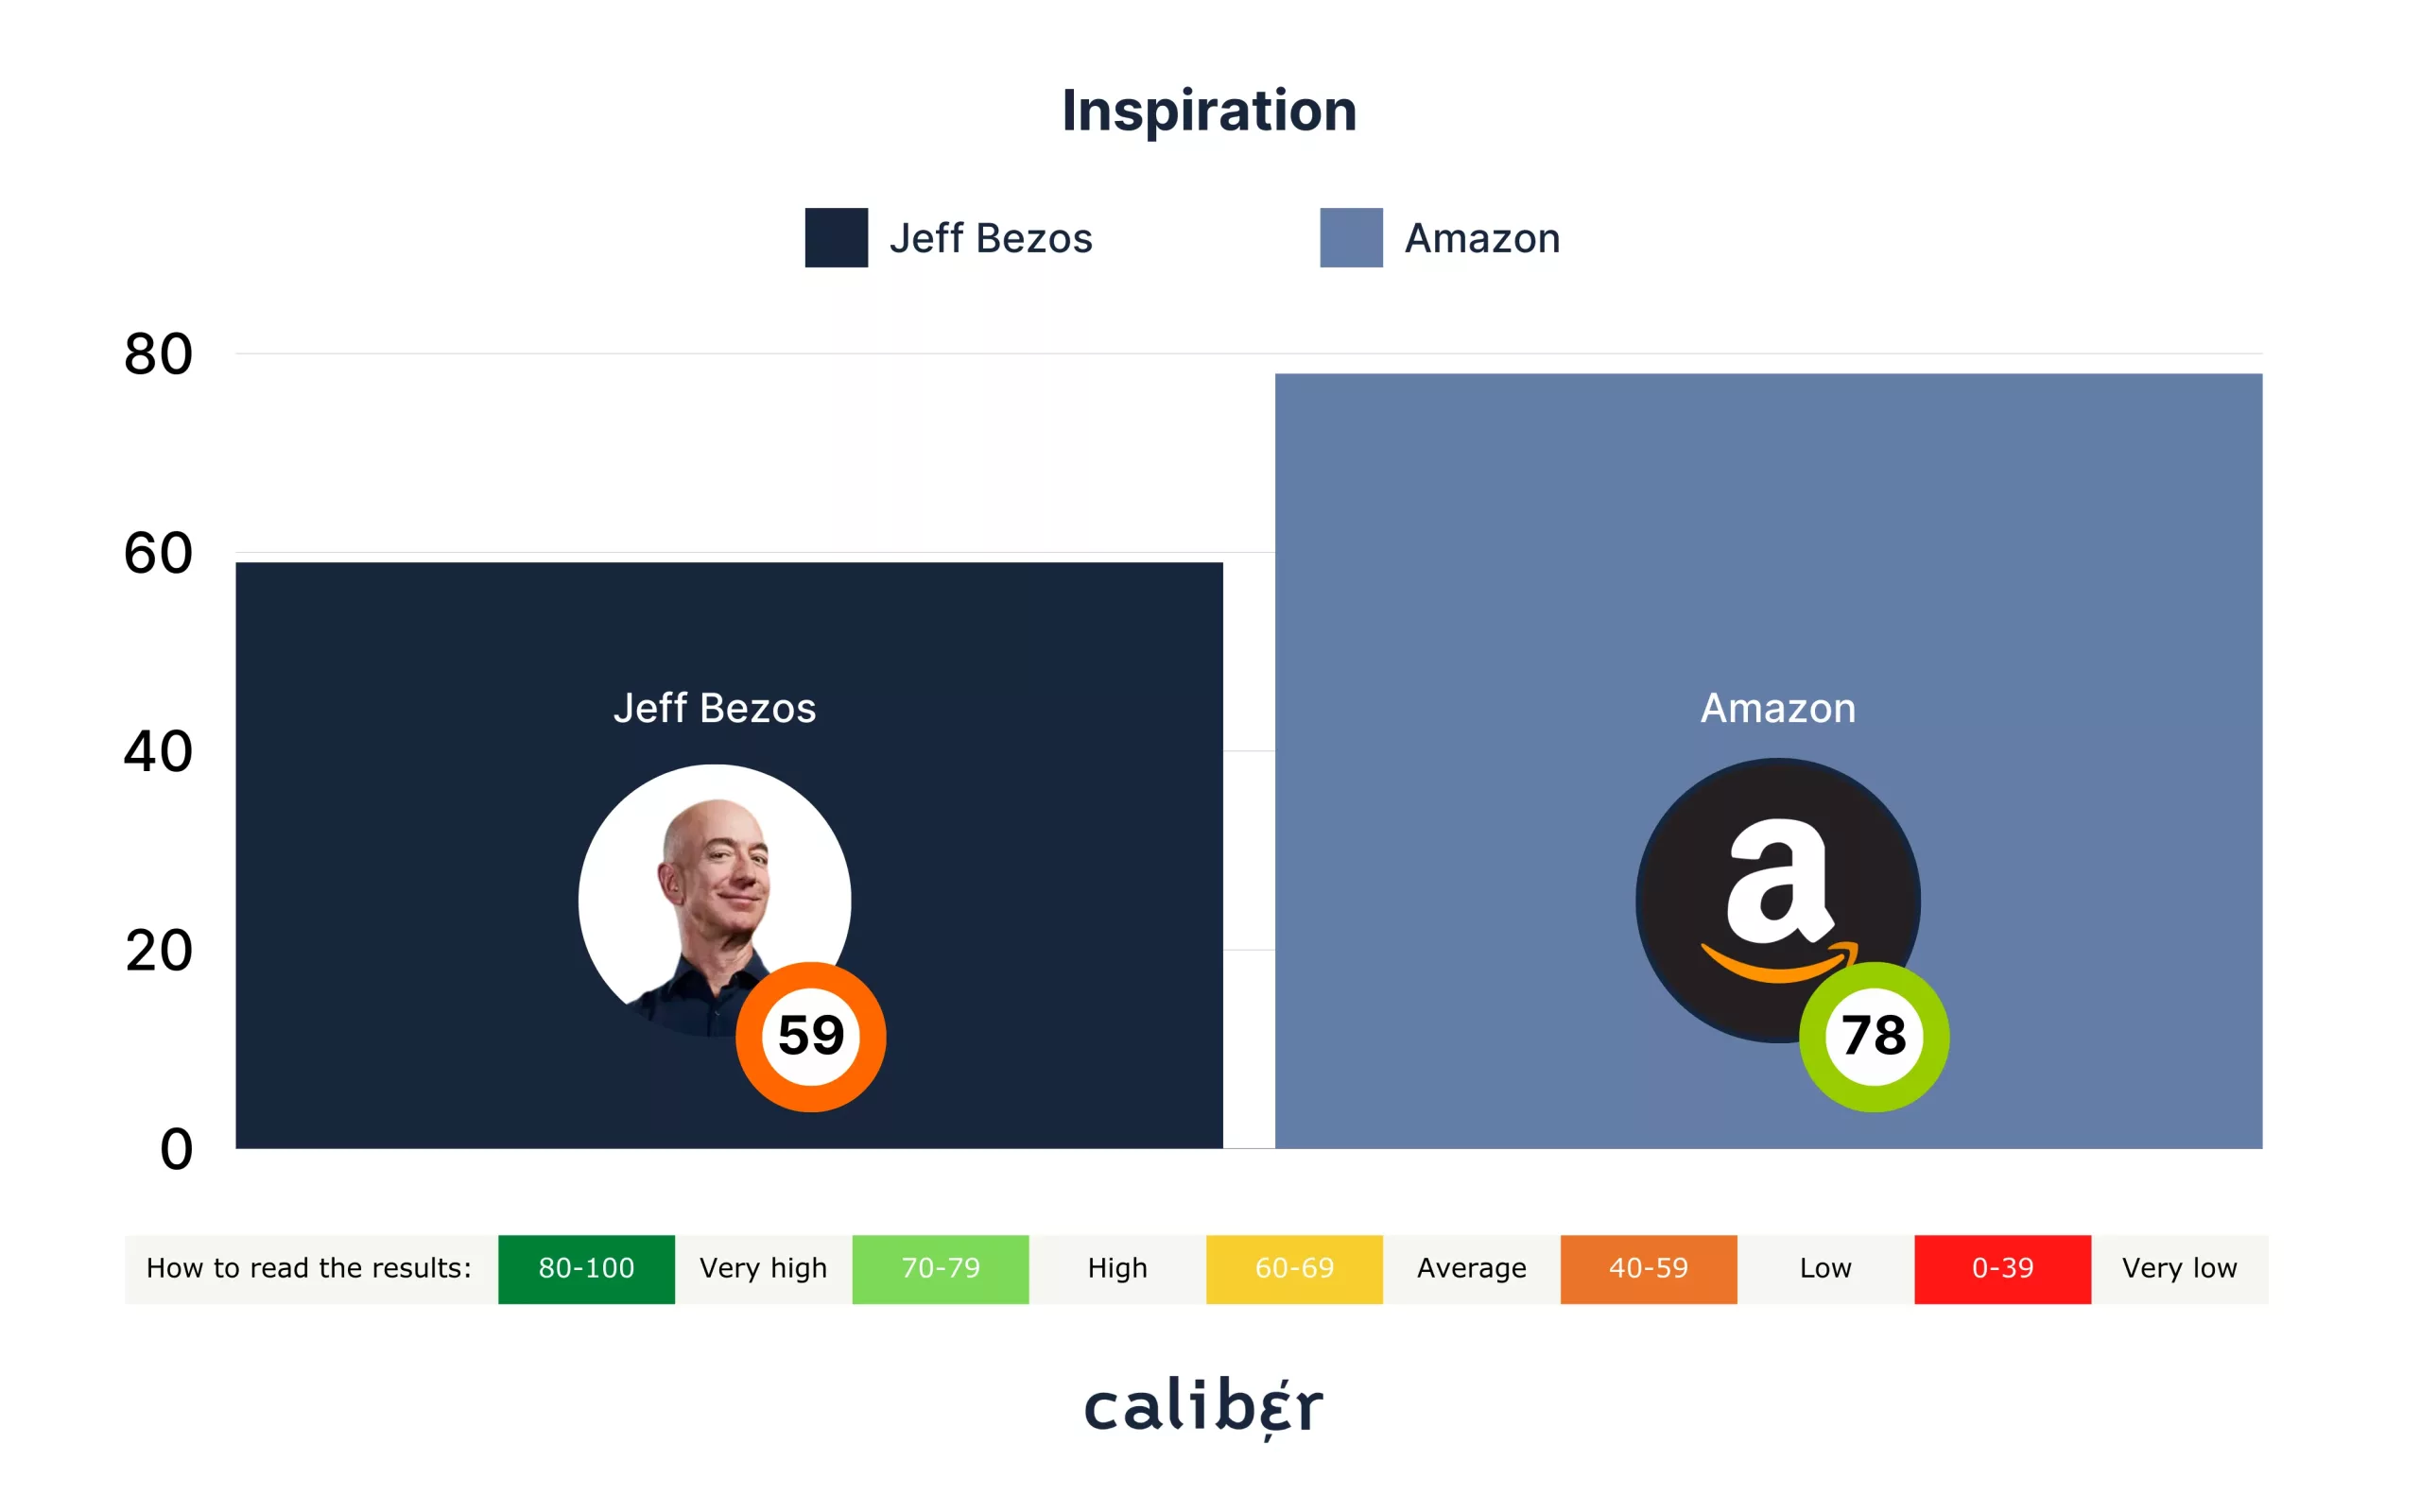 Jeff Bezos Inspiration Score